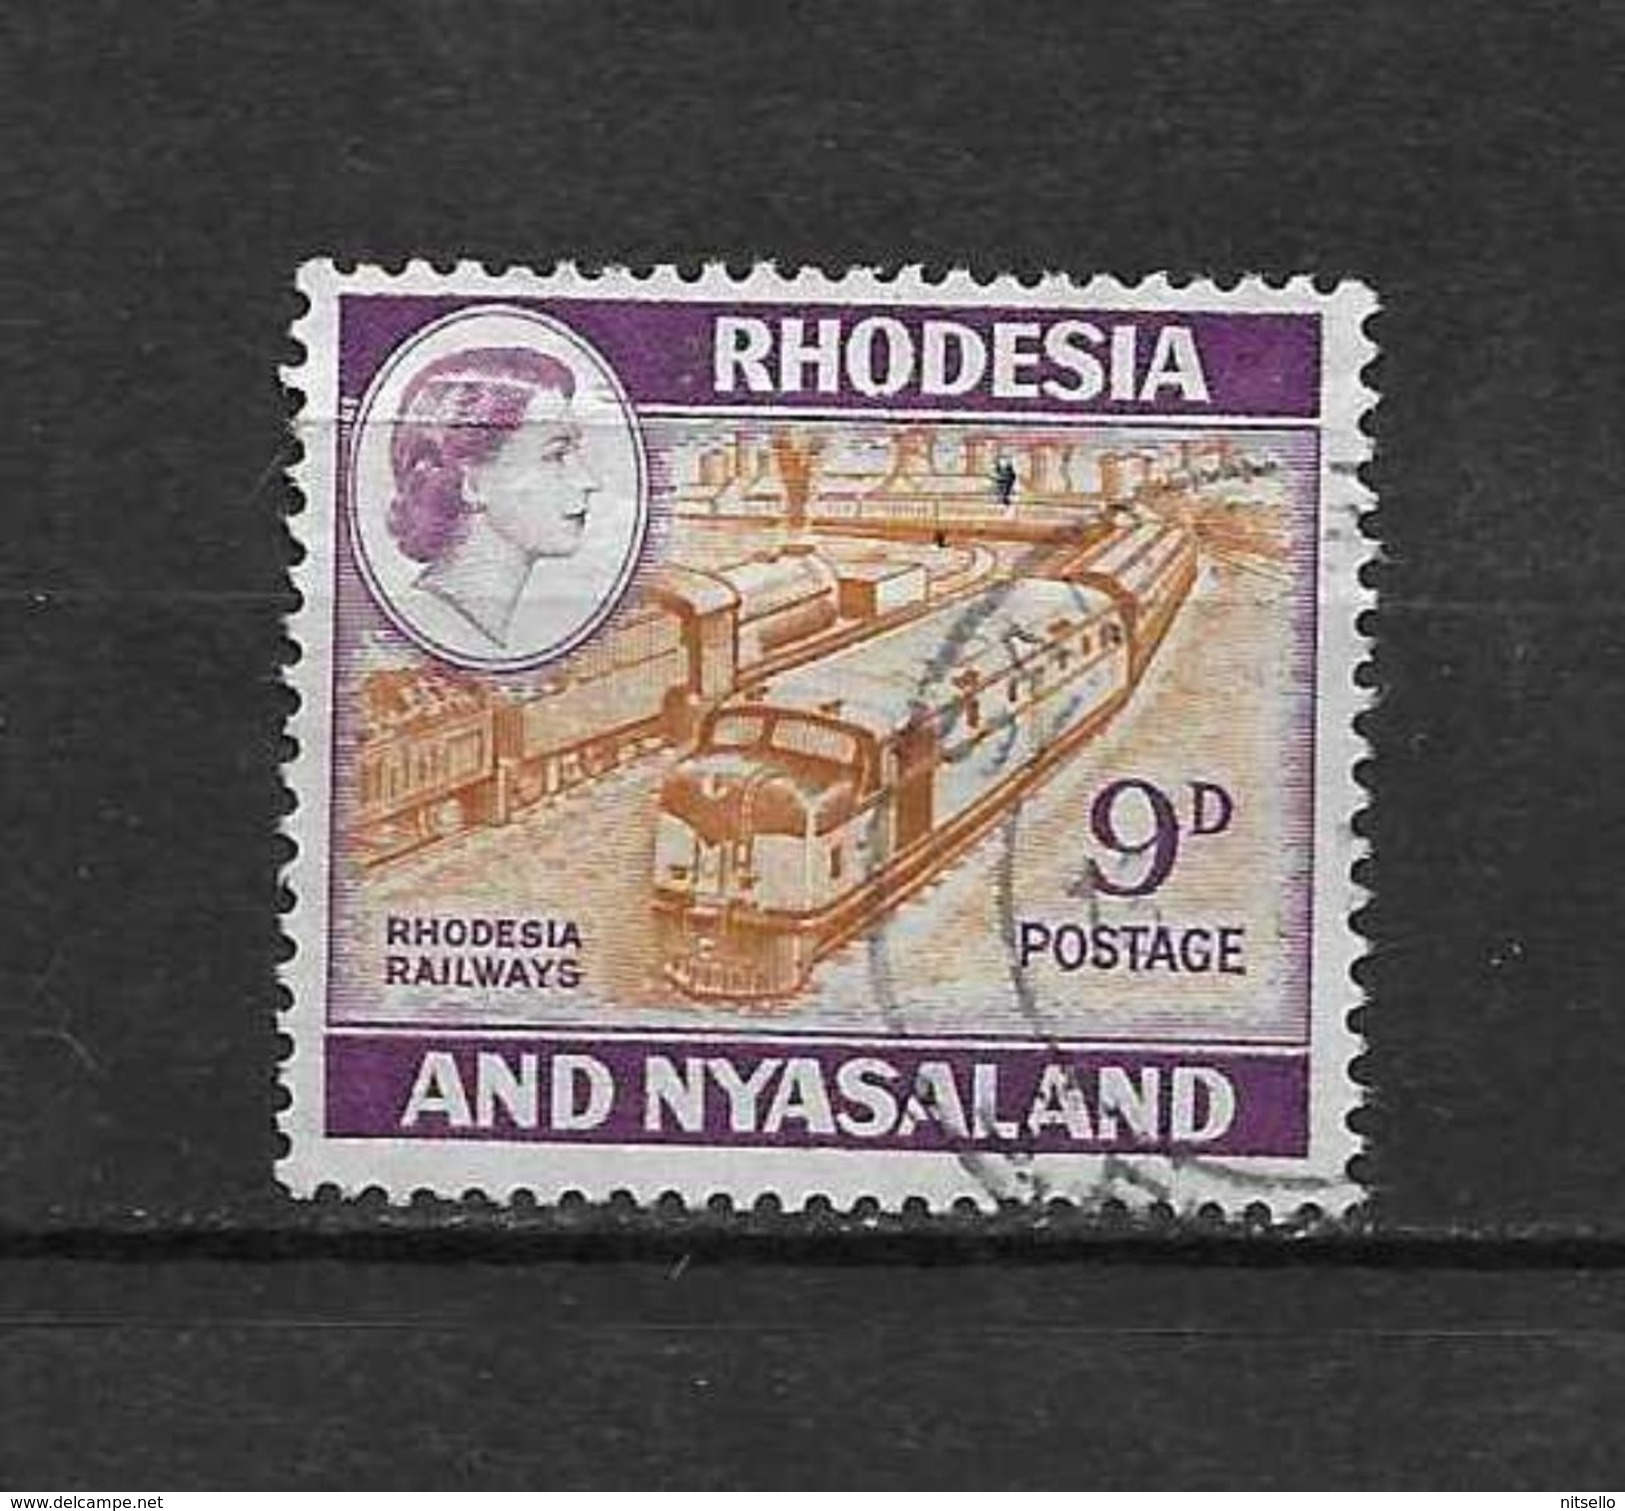 LOTE 2219A  ///   (C002)  RODESIA & NYASALAND          ¡¡¡¡¡ LIQUIDATION!!!!! - Rhodesia & Nyasaland (1954-1963)